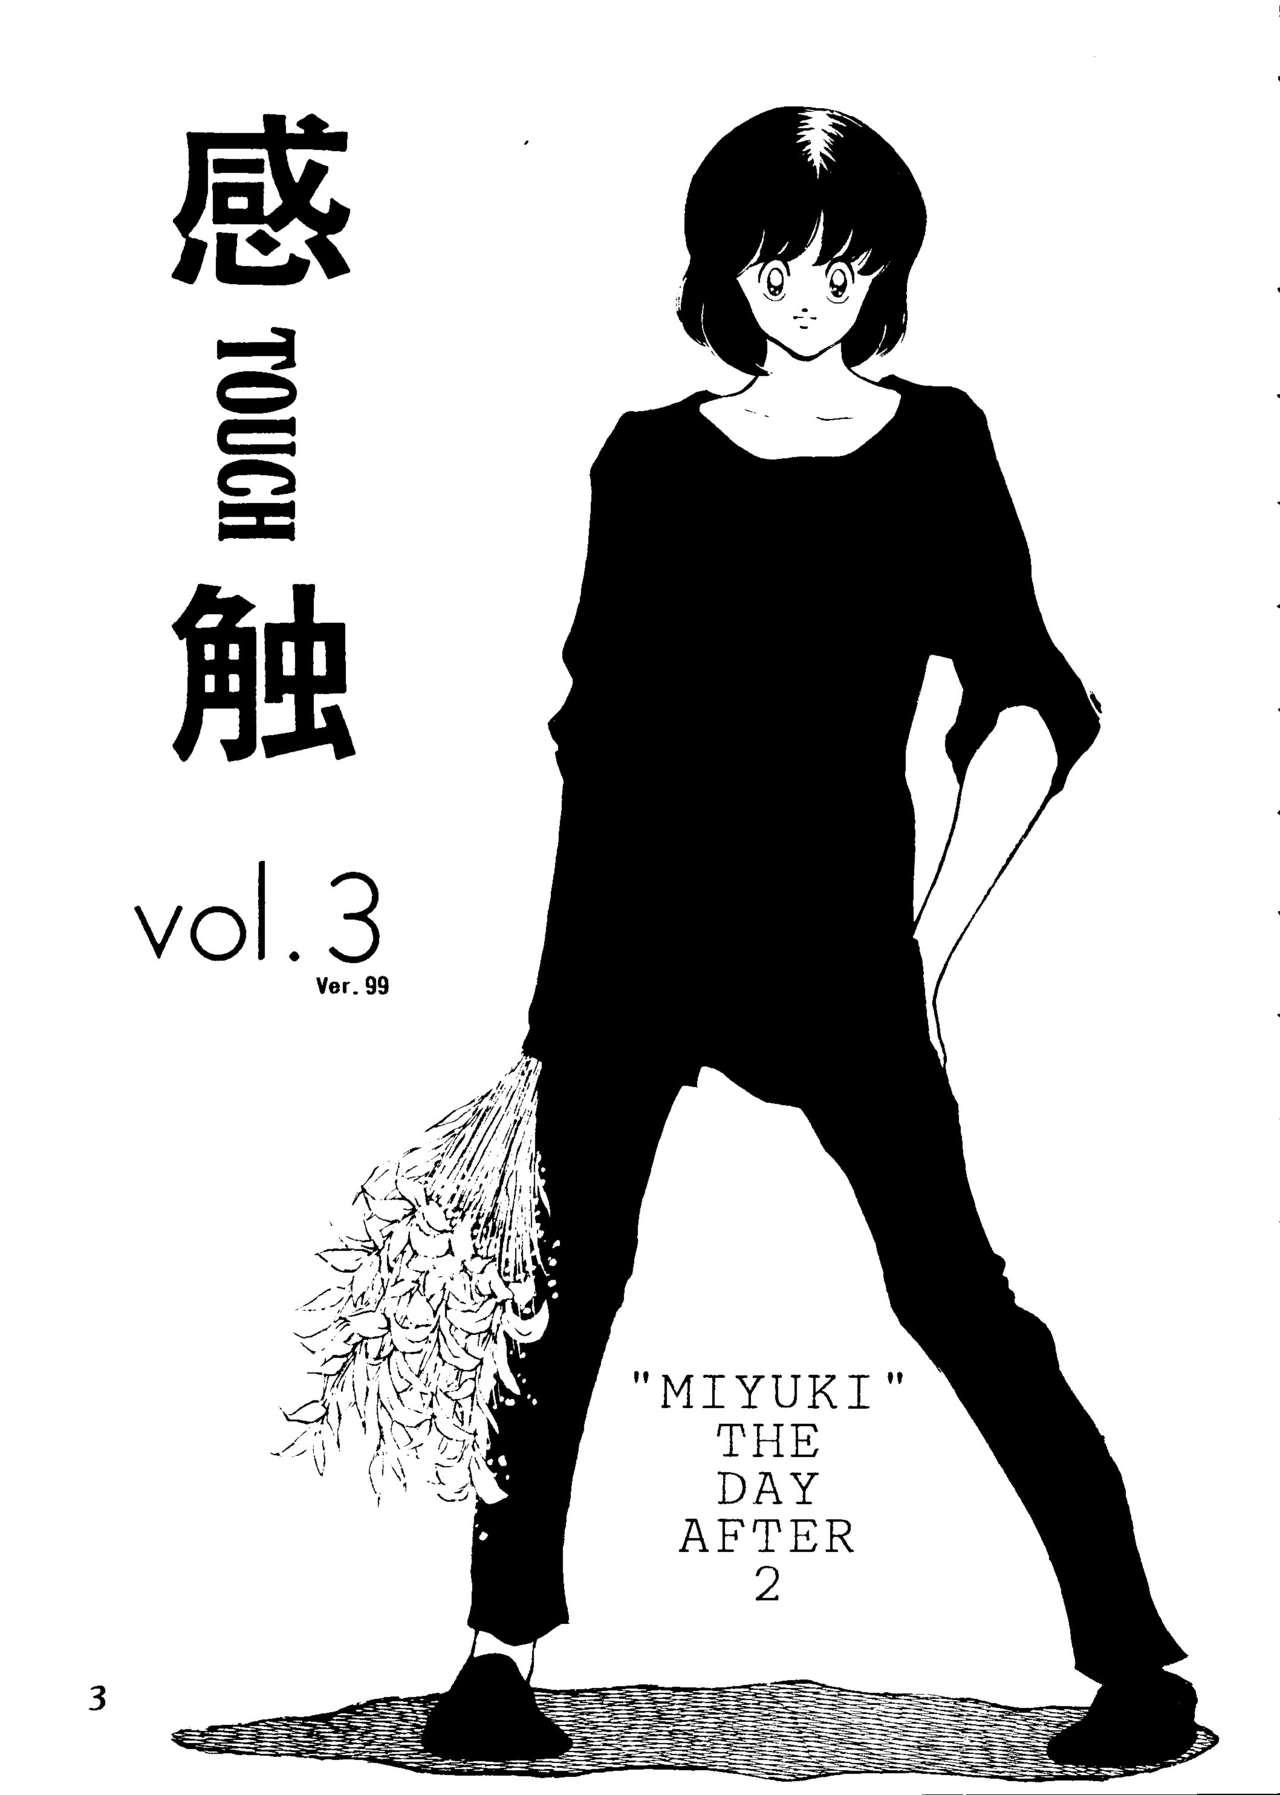 Porn Touch vol. 3 ver.99 - Miyuki Strap On - Page 2